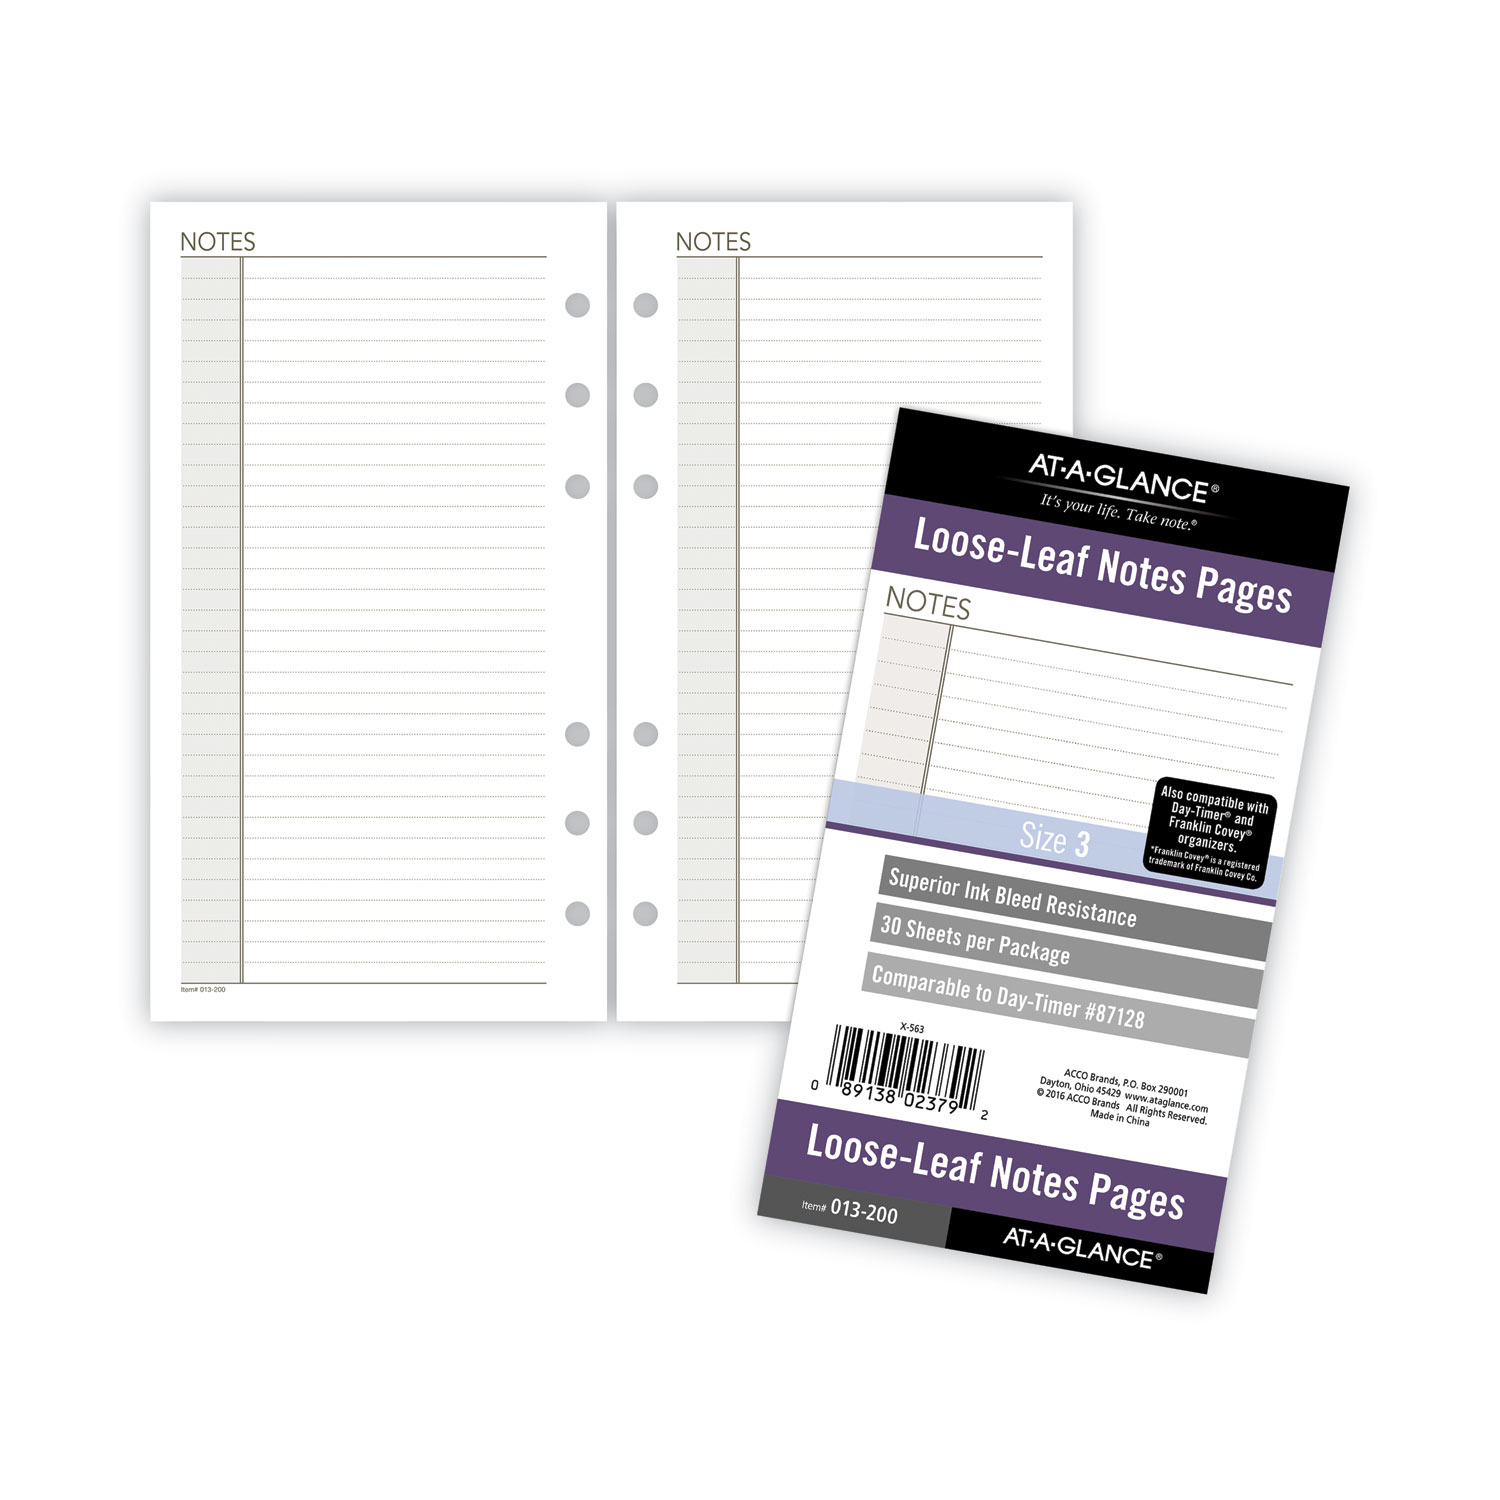 Progress Parchment Paper Sheets – Progress Essentials